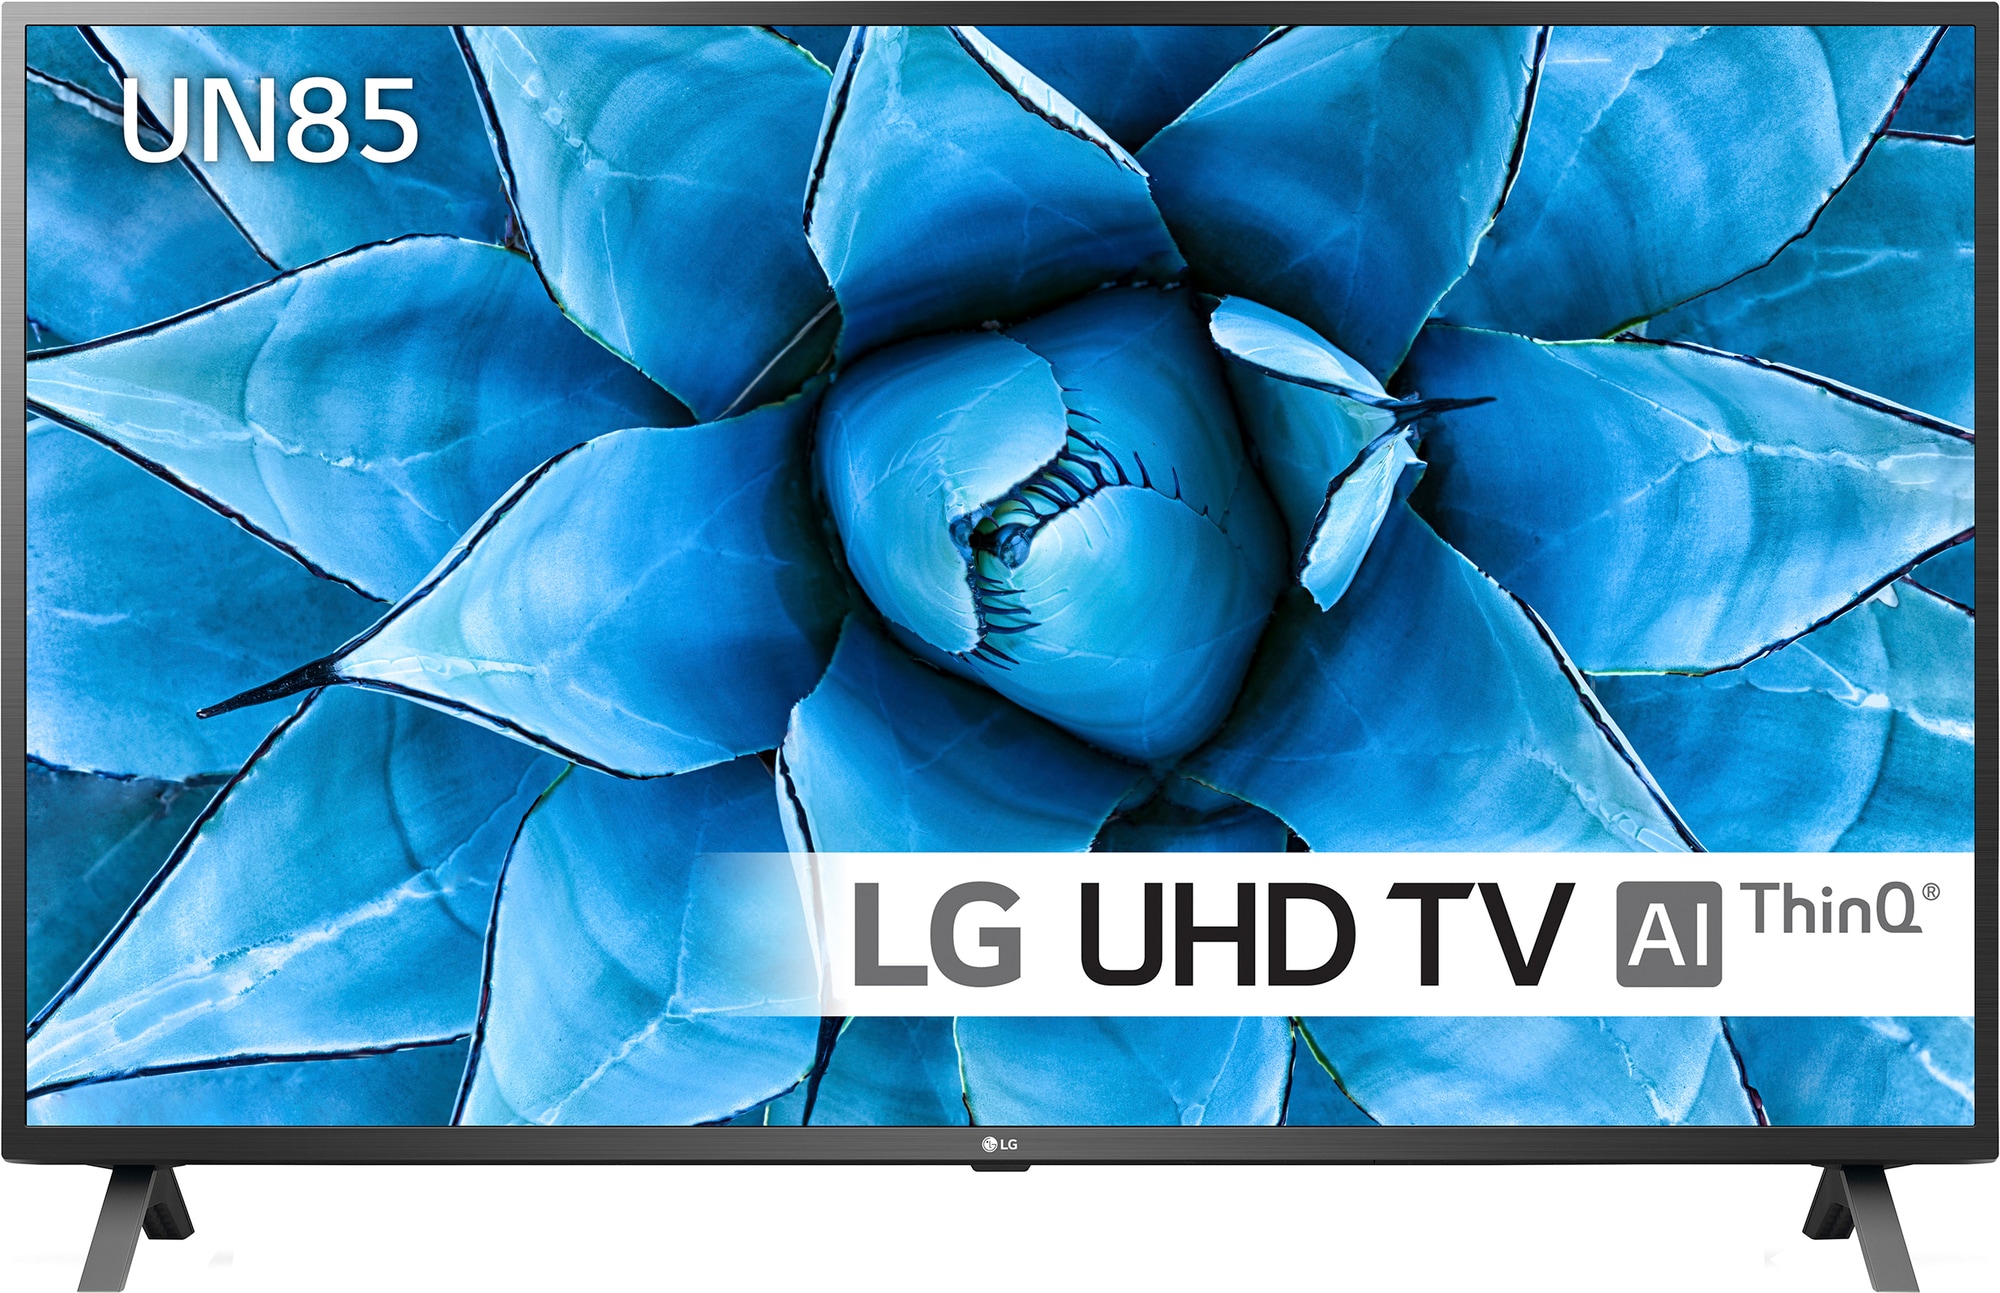 LG 65" UN85 4K UHD Smart TV 65UN8500 (2020) - Gigantti verkkokauppa